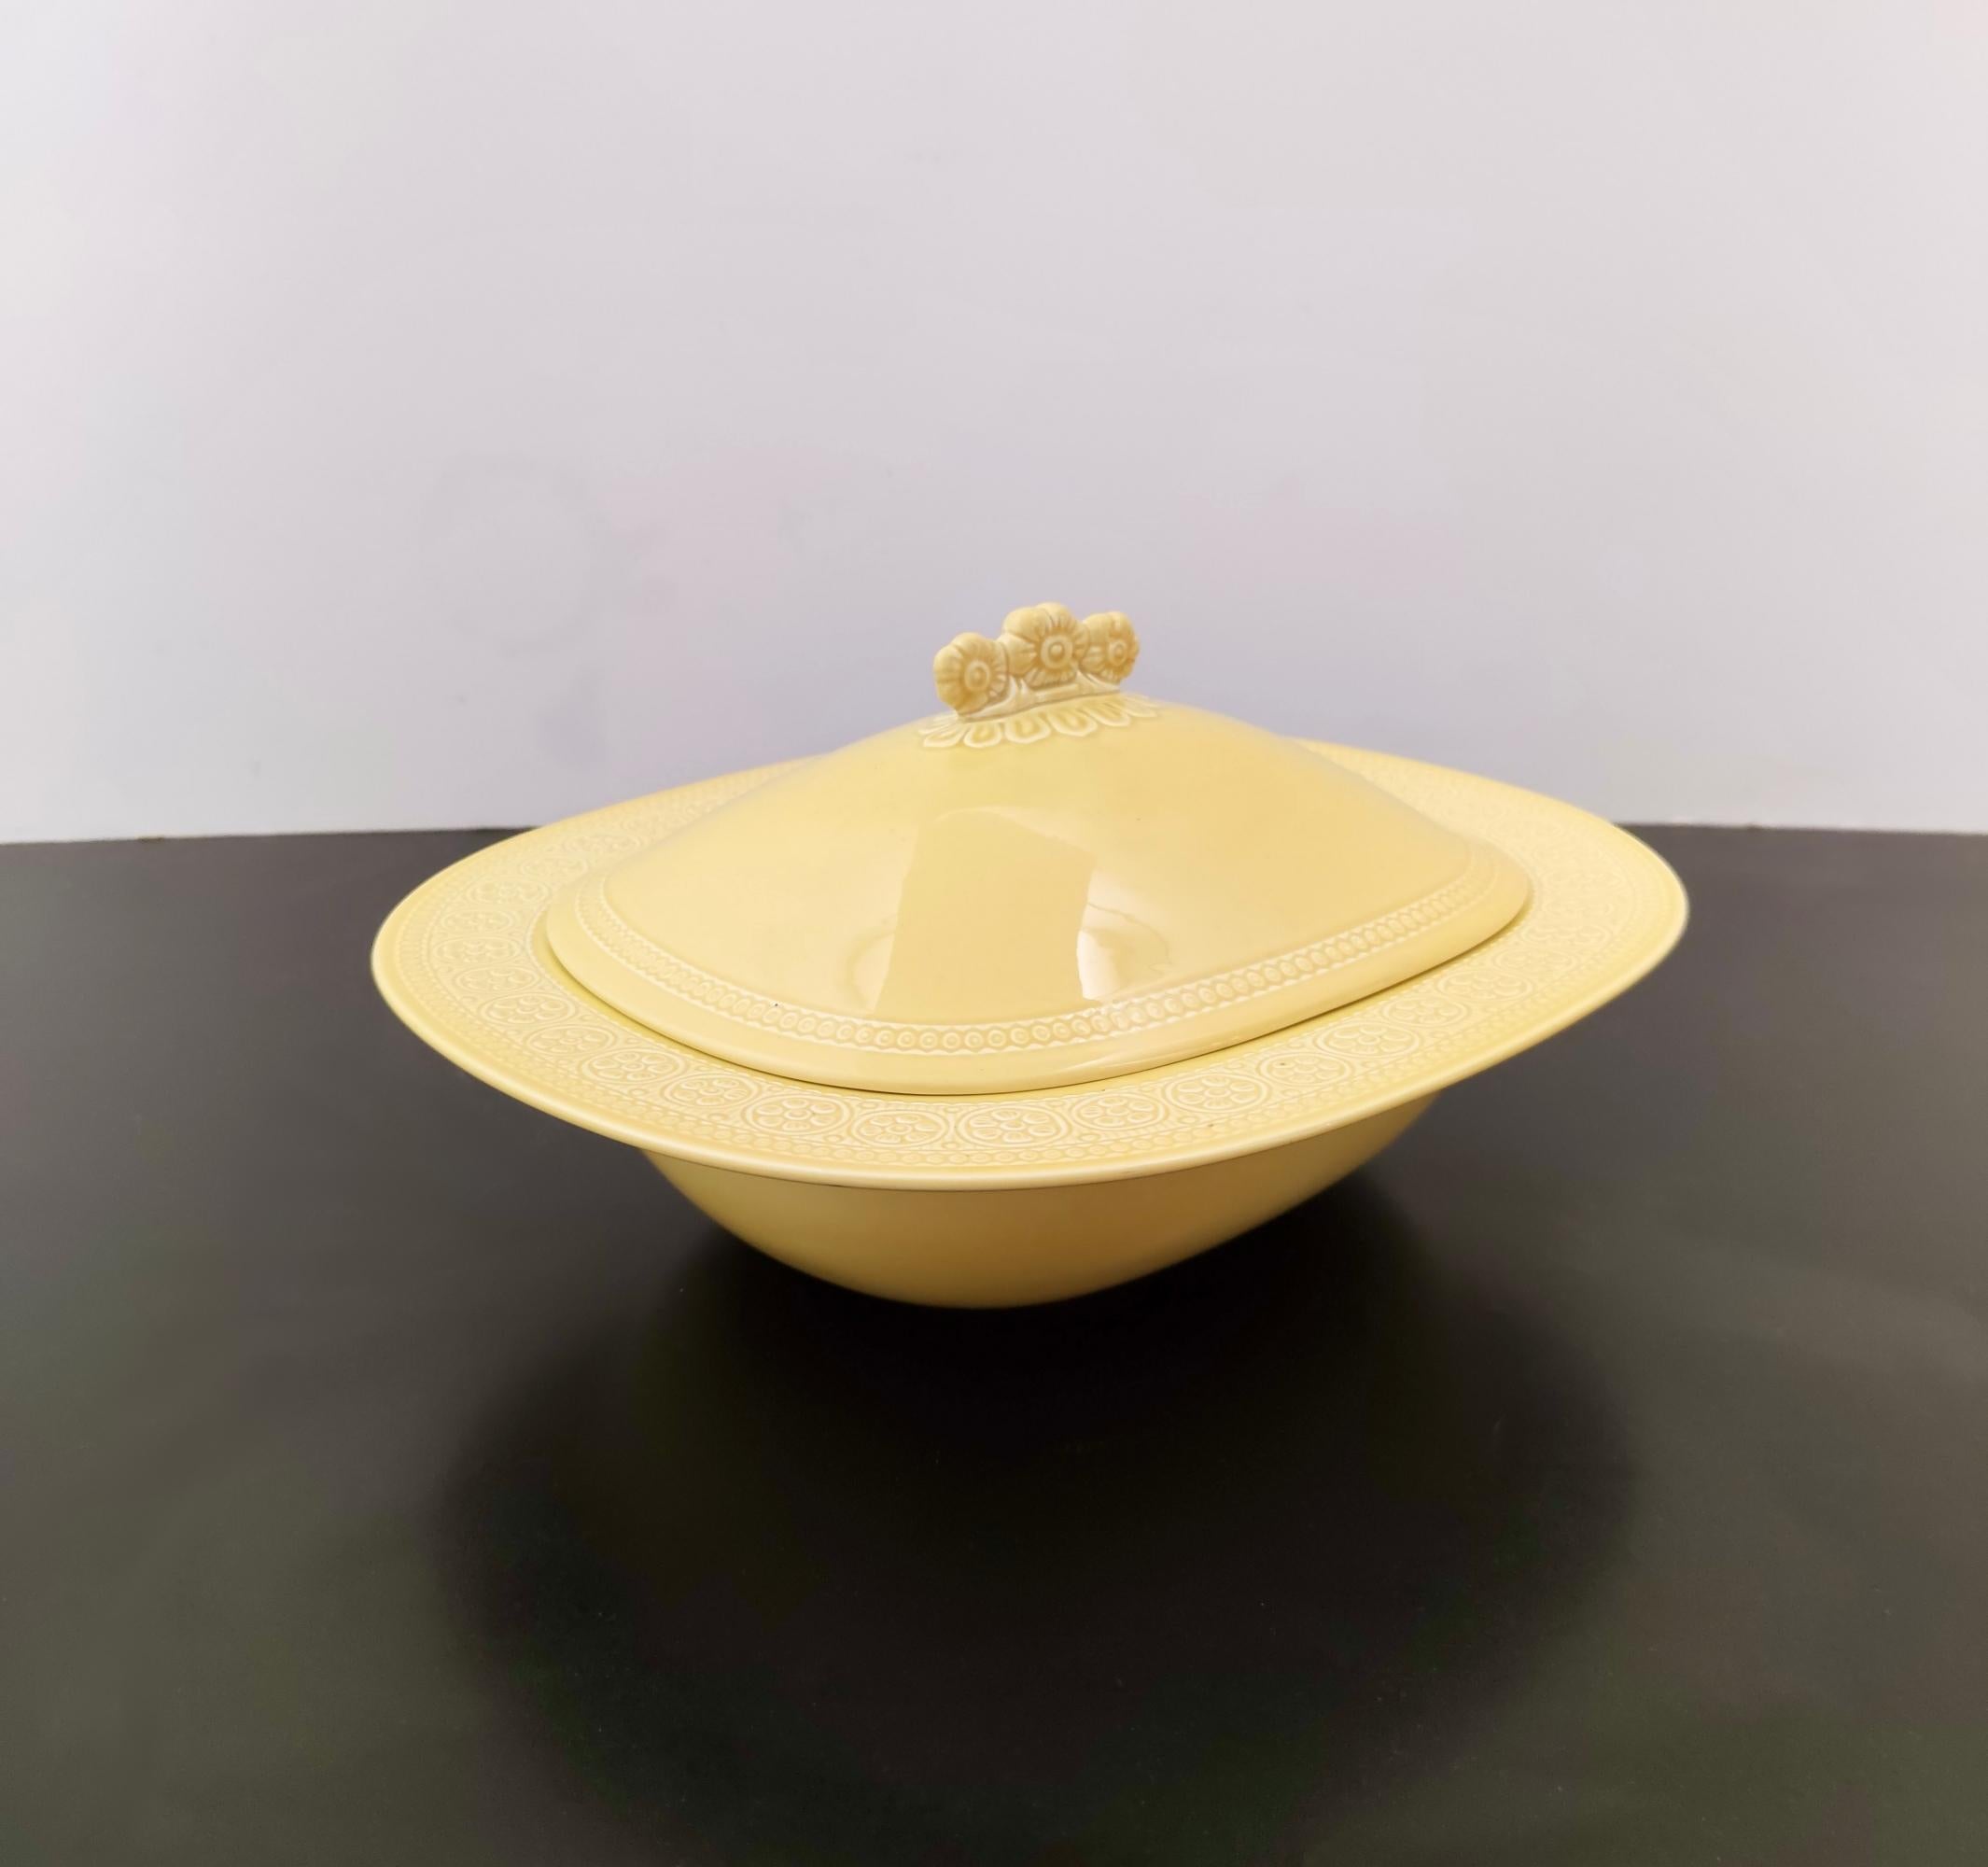 Fabriqué en Italie, 1965. 
Cette coupe de centre de table est fabriquée en faïence laquée jaune avec des décorations à bossages.
Il s'agit d'un article d'époque, qui peut donc présenter de légères traces d'utilisation, mais qui peut être considéré